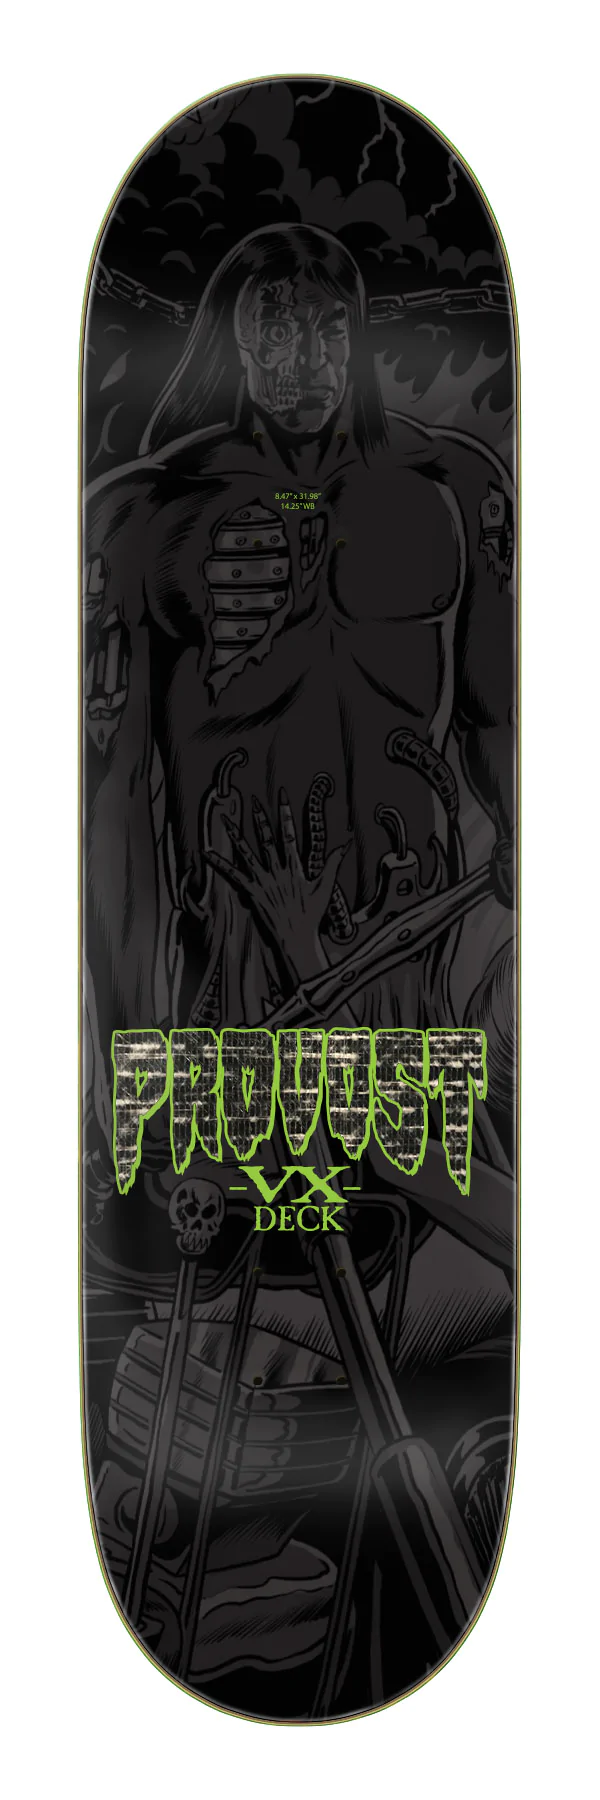 Creature Provost hellbound VX 8.47" skateboard deck 